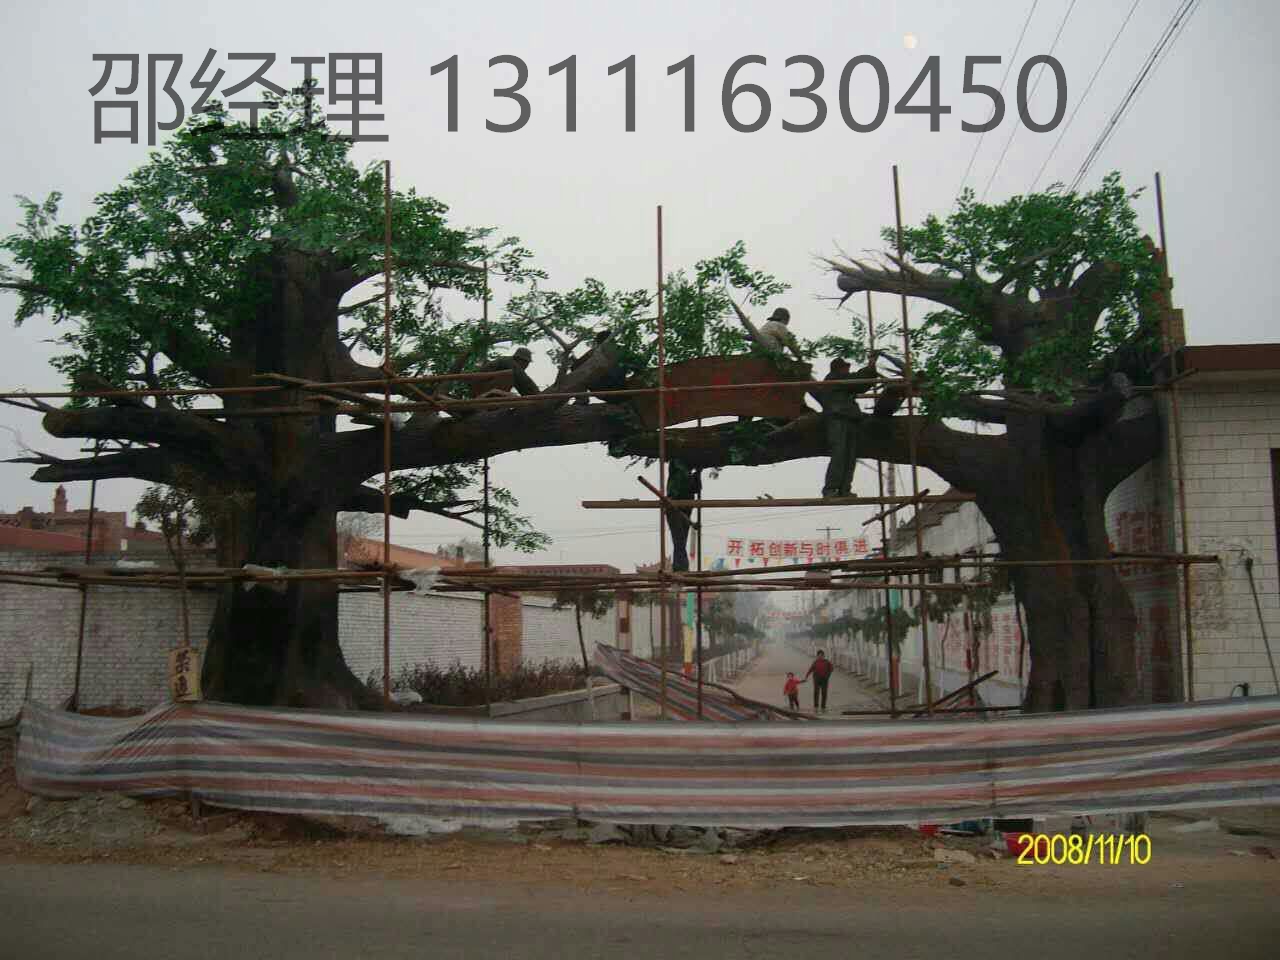 供应北京水泥嗍树/嗍树牌楼/嗍山/北京水泥嗍山图片